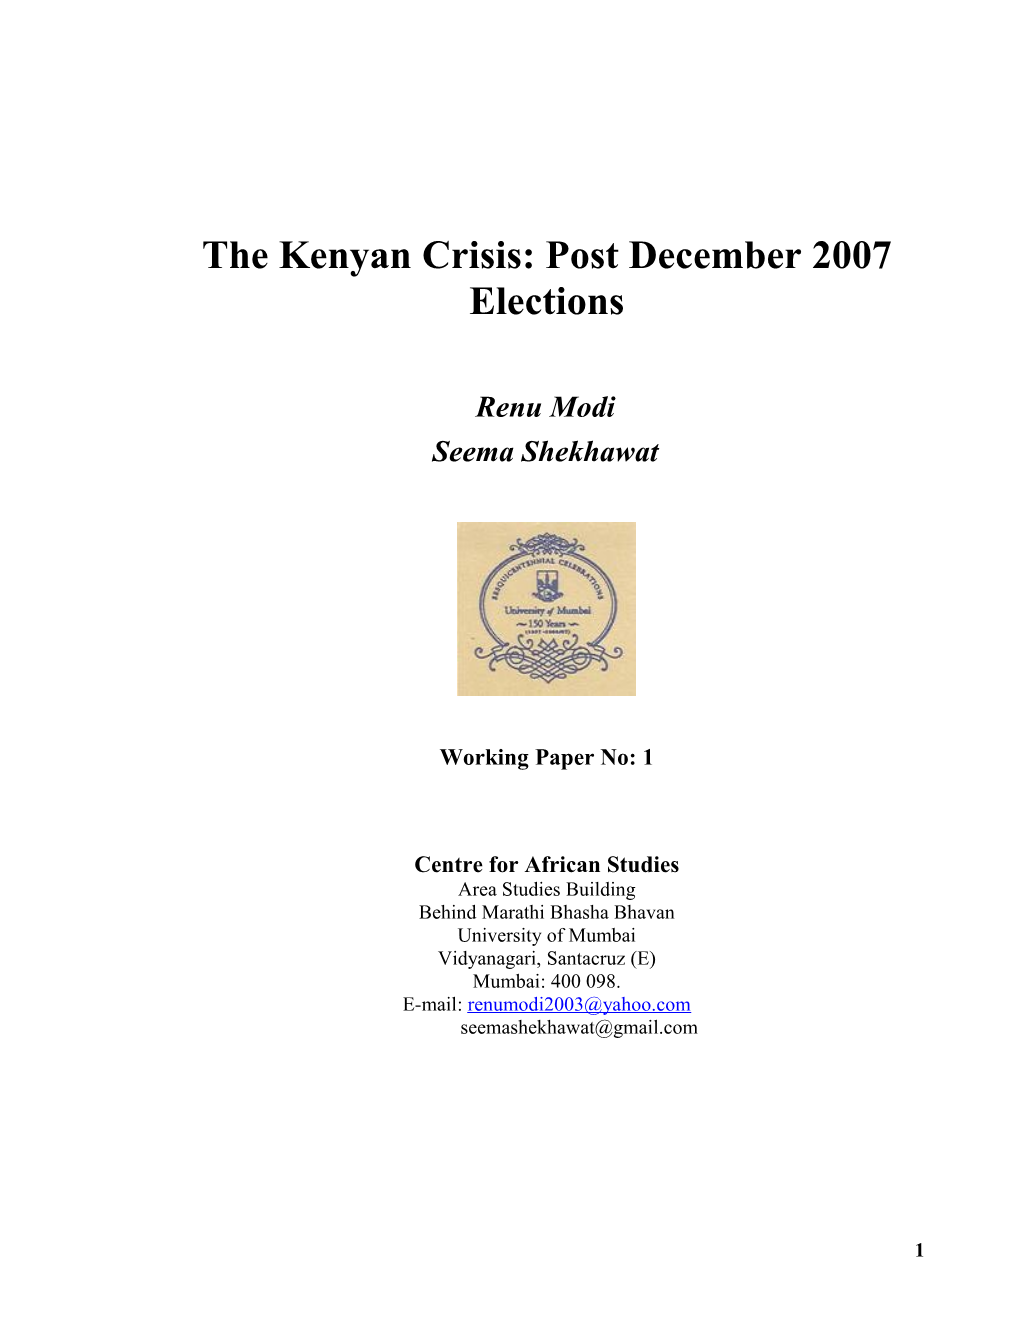 The Kenyan Crisis: How And